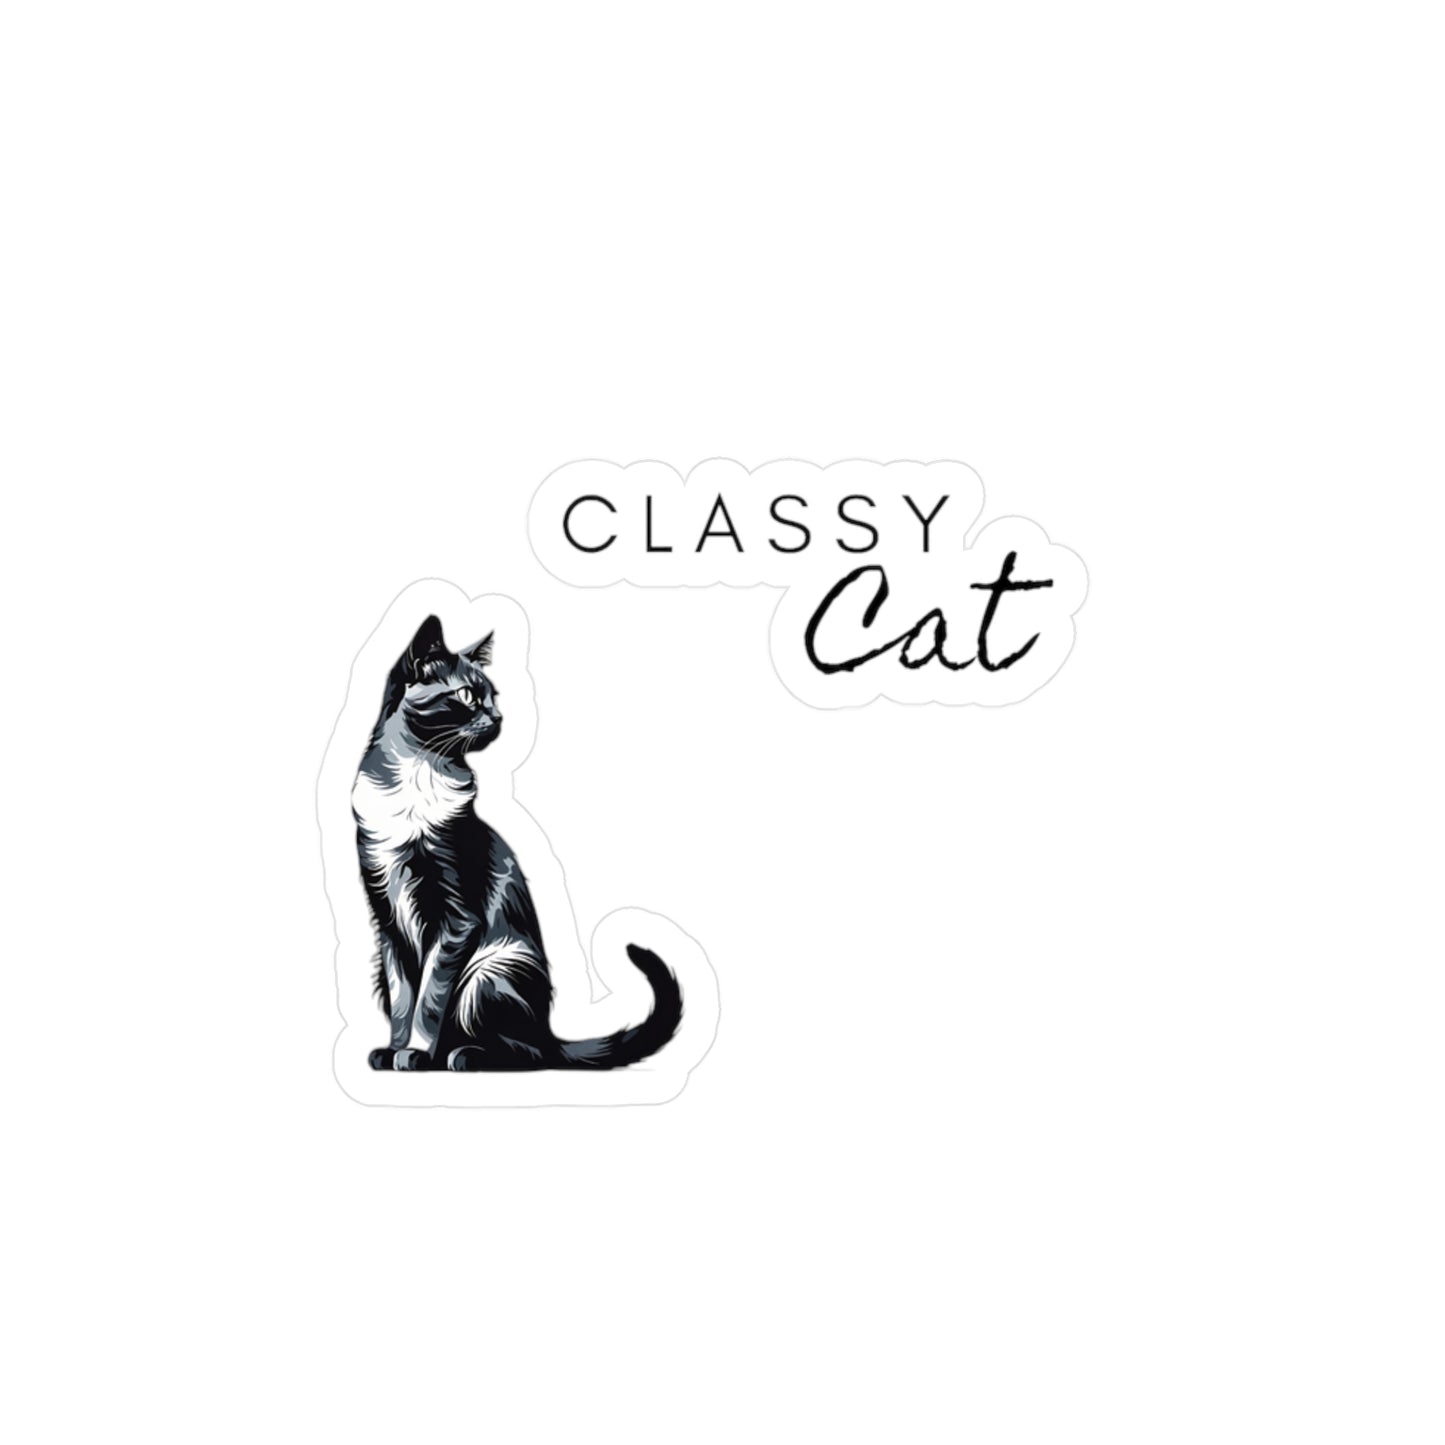 Station7 Classy Cat Kiss-Cut Vinyl Decals